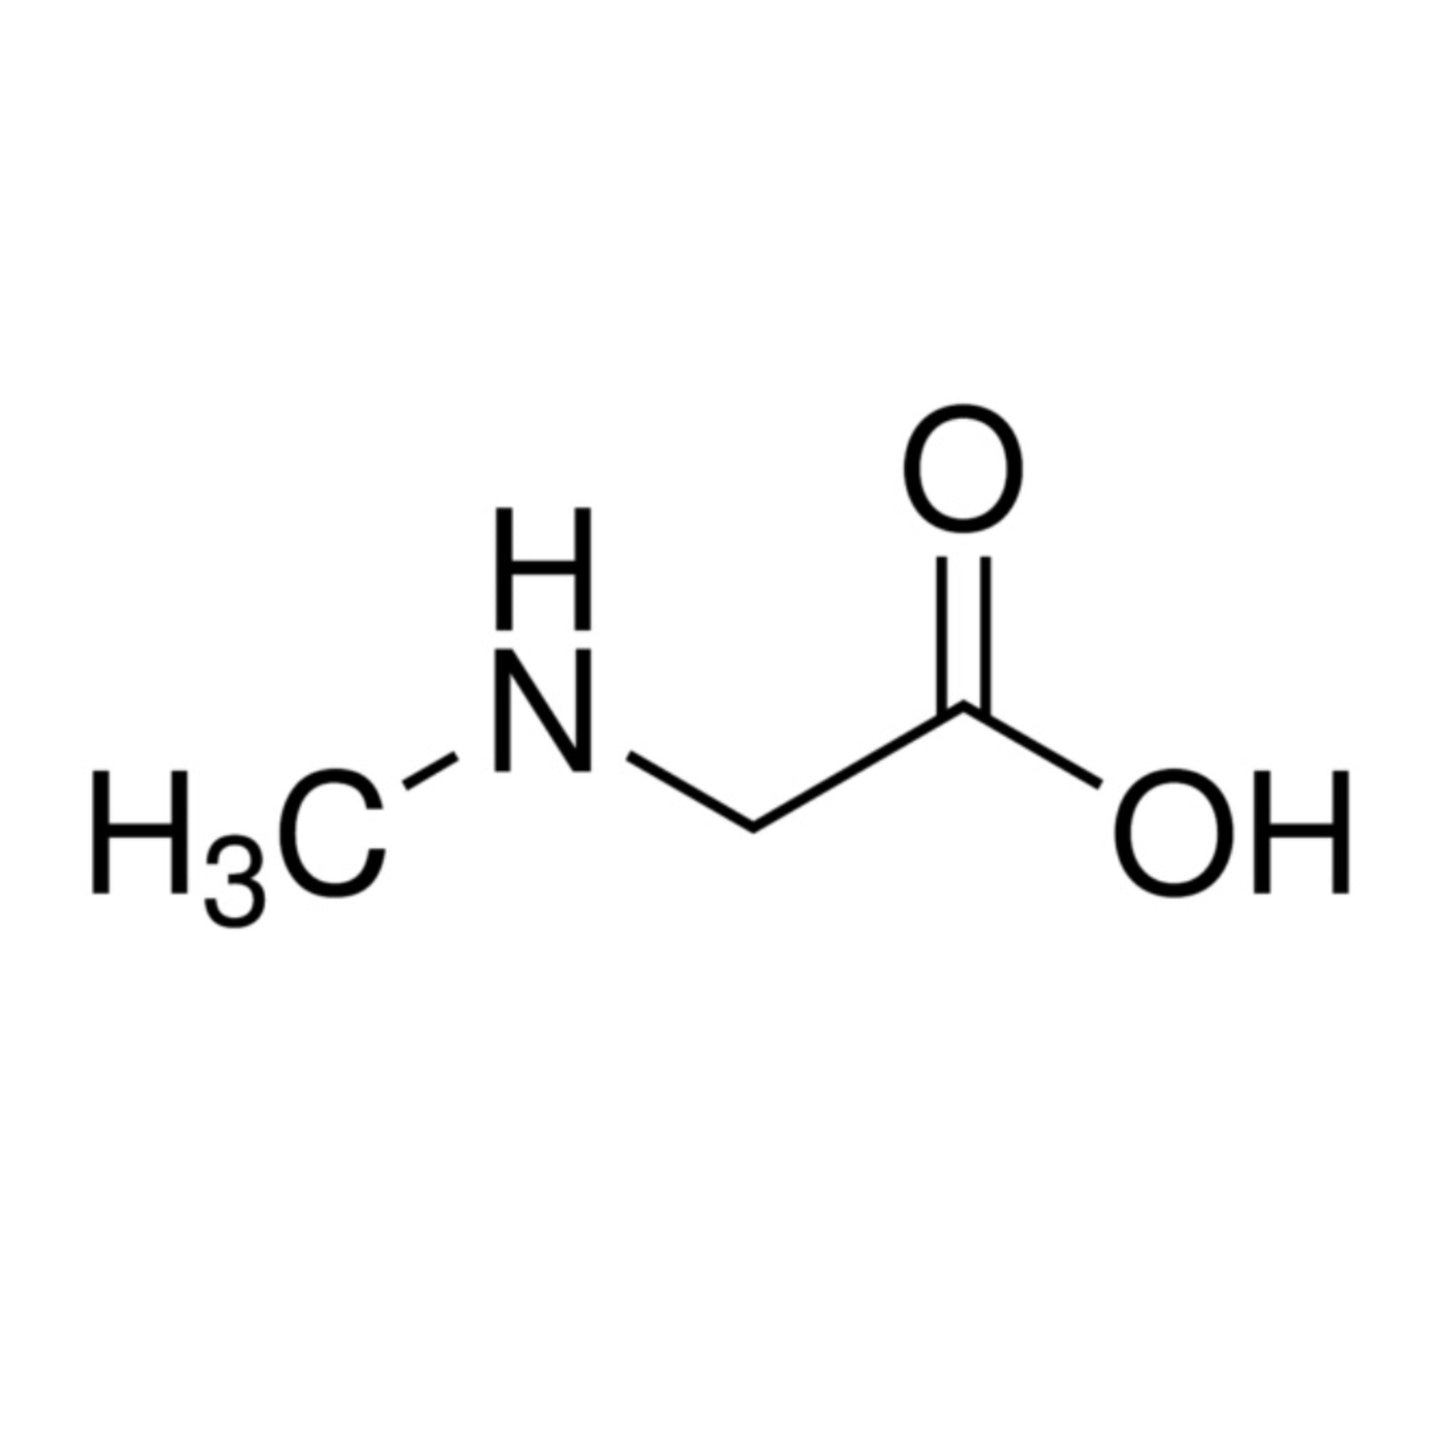 4 Sarcosine (N-Methylglycine) - Four Ingredients